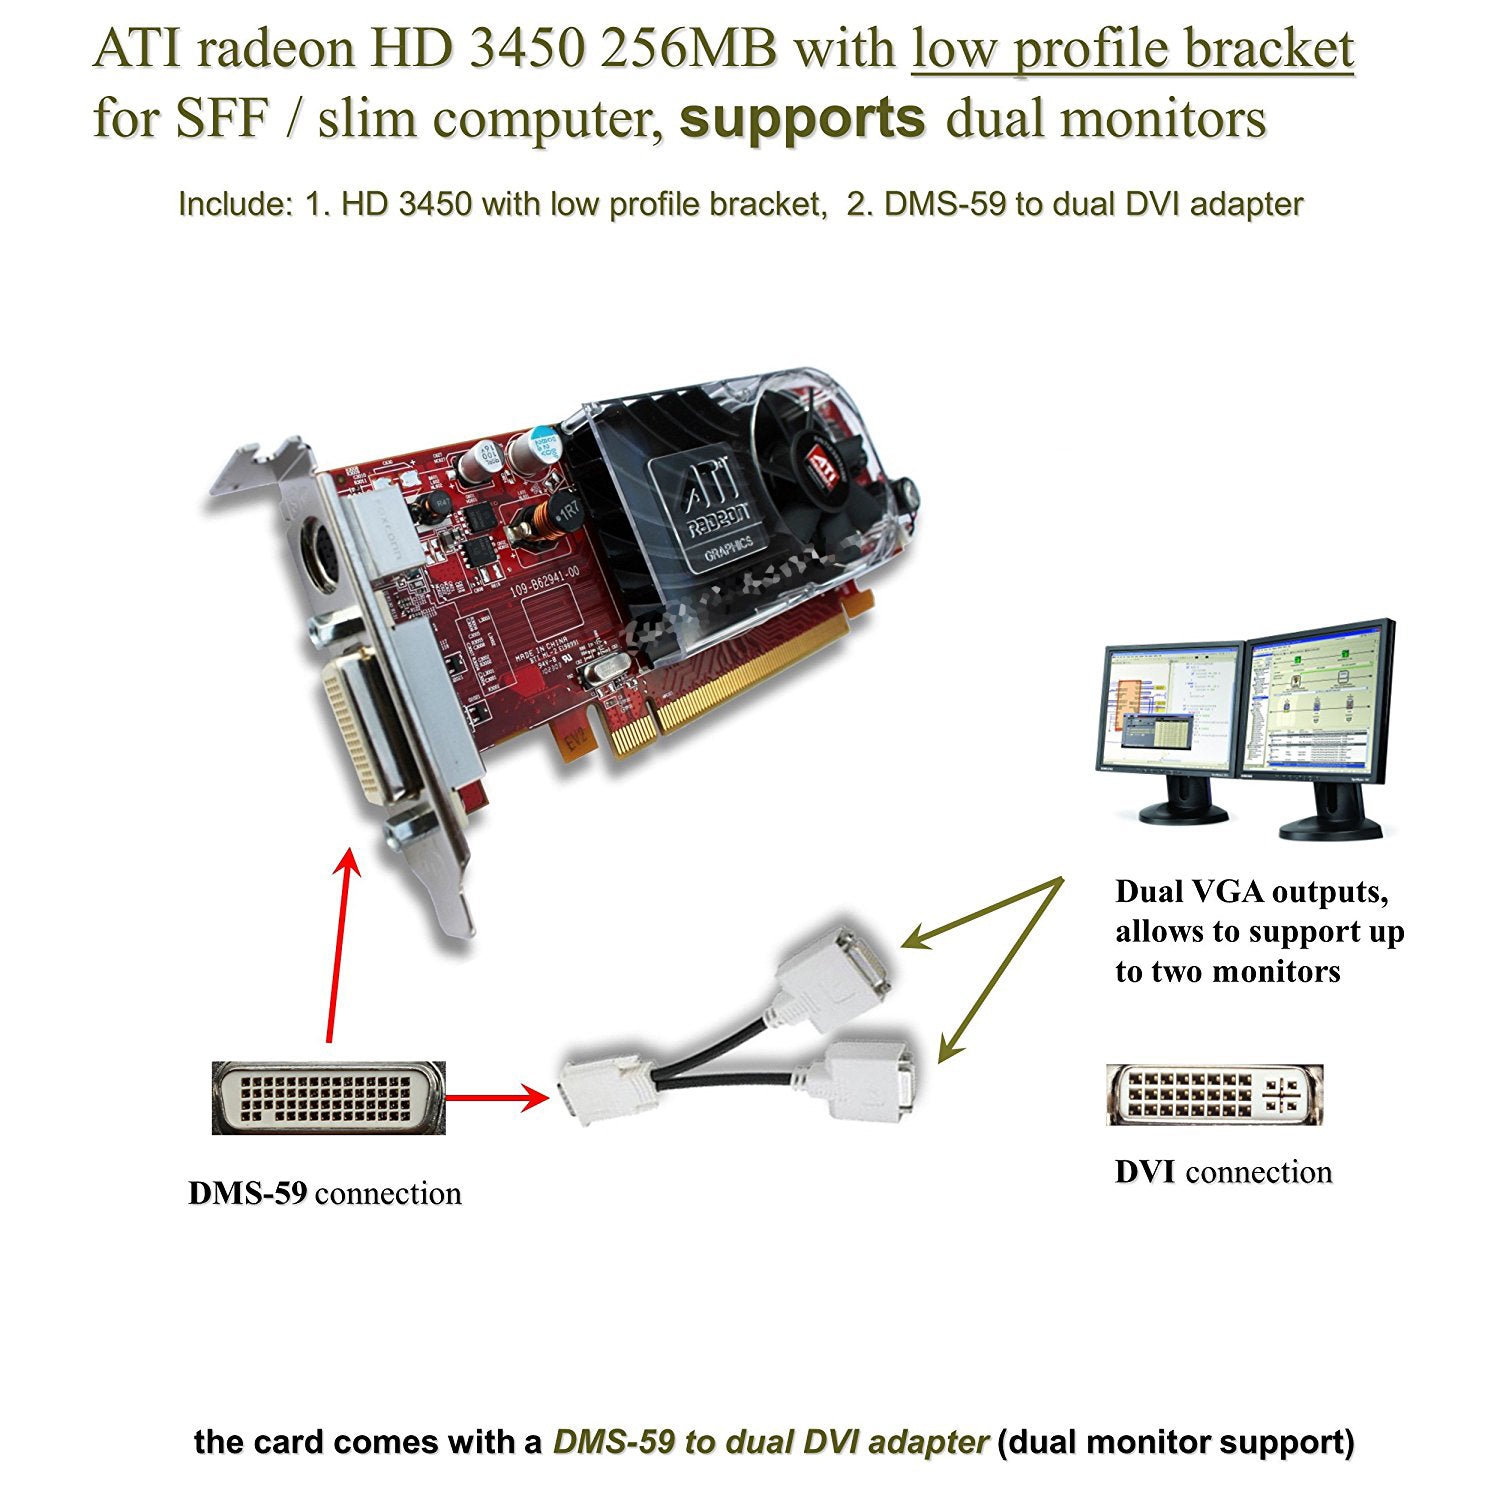 Radeon support. ATI Radeon HD 3450 характеристики. MSI AMD Radeon hd3450 256mb ddr2 64-bit PCIE Video Card DVI VGA bobcatatx-30-m04 как разобрать. Dual DMS 220. Dual DMS 210 характеристики.